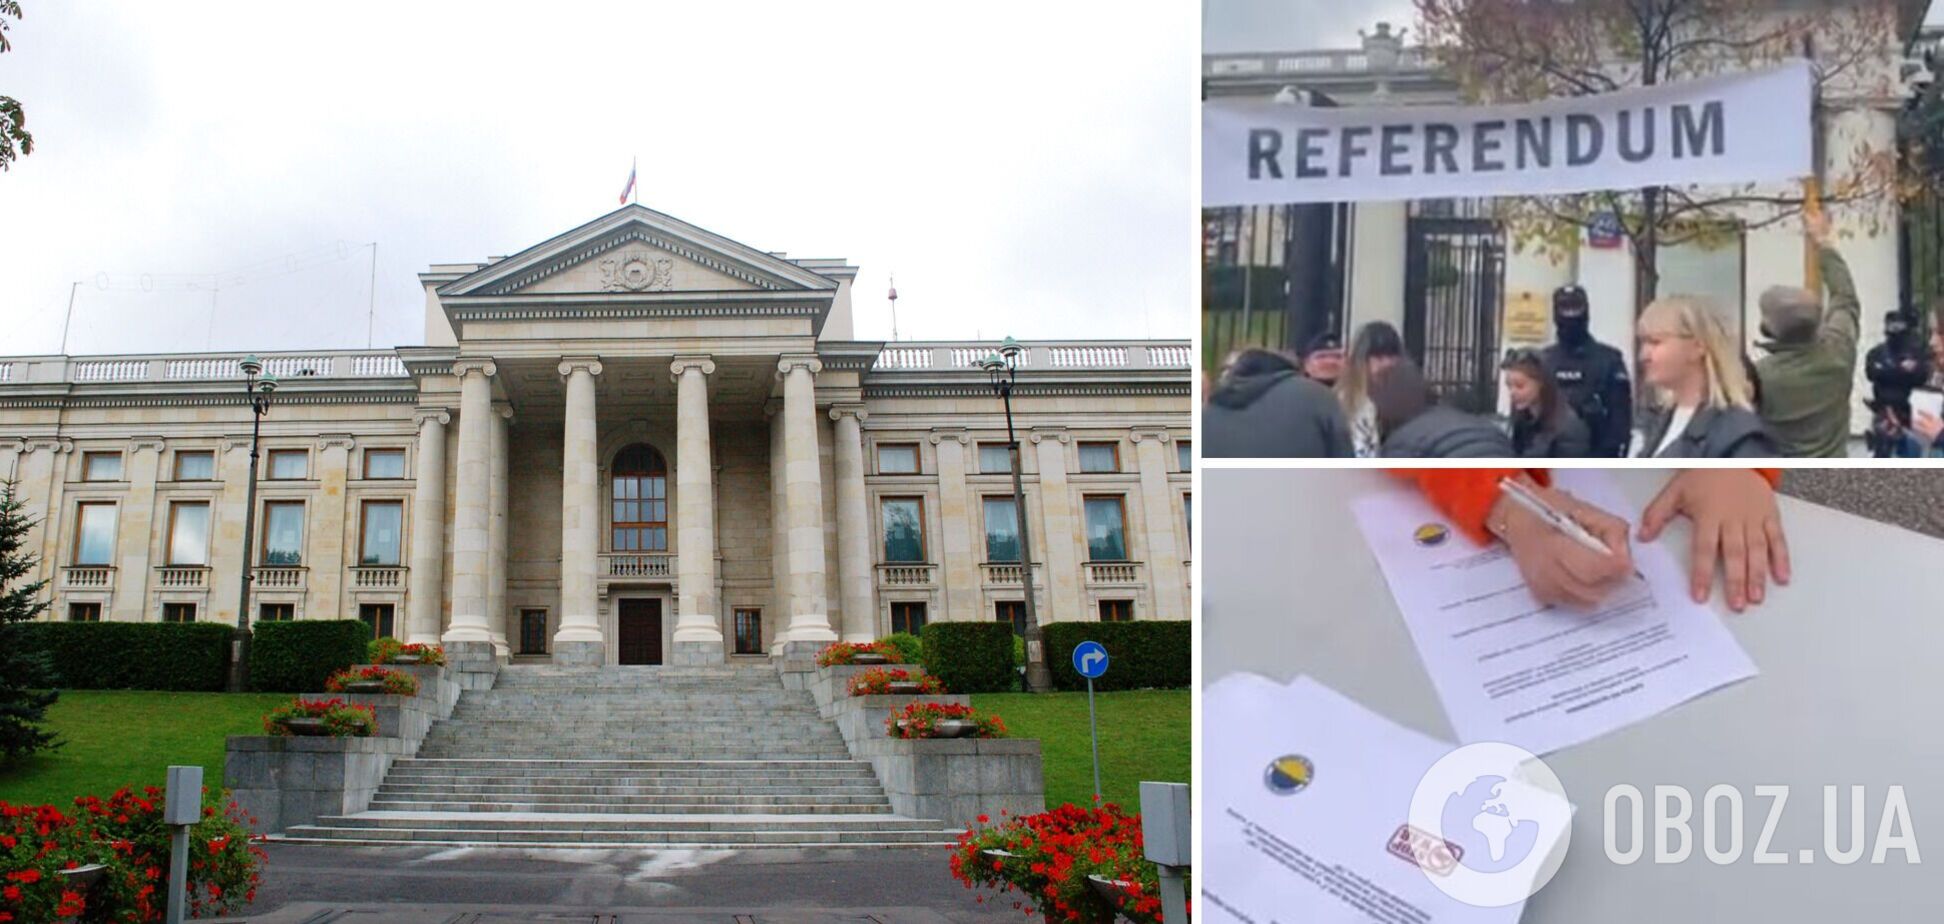 В Варшаве прошел 'референдум' за передачу в собственность города здания посольства РФ